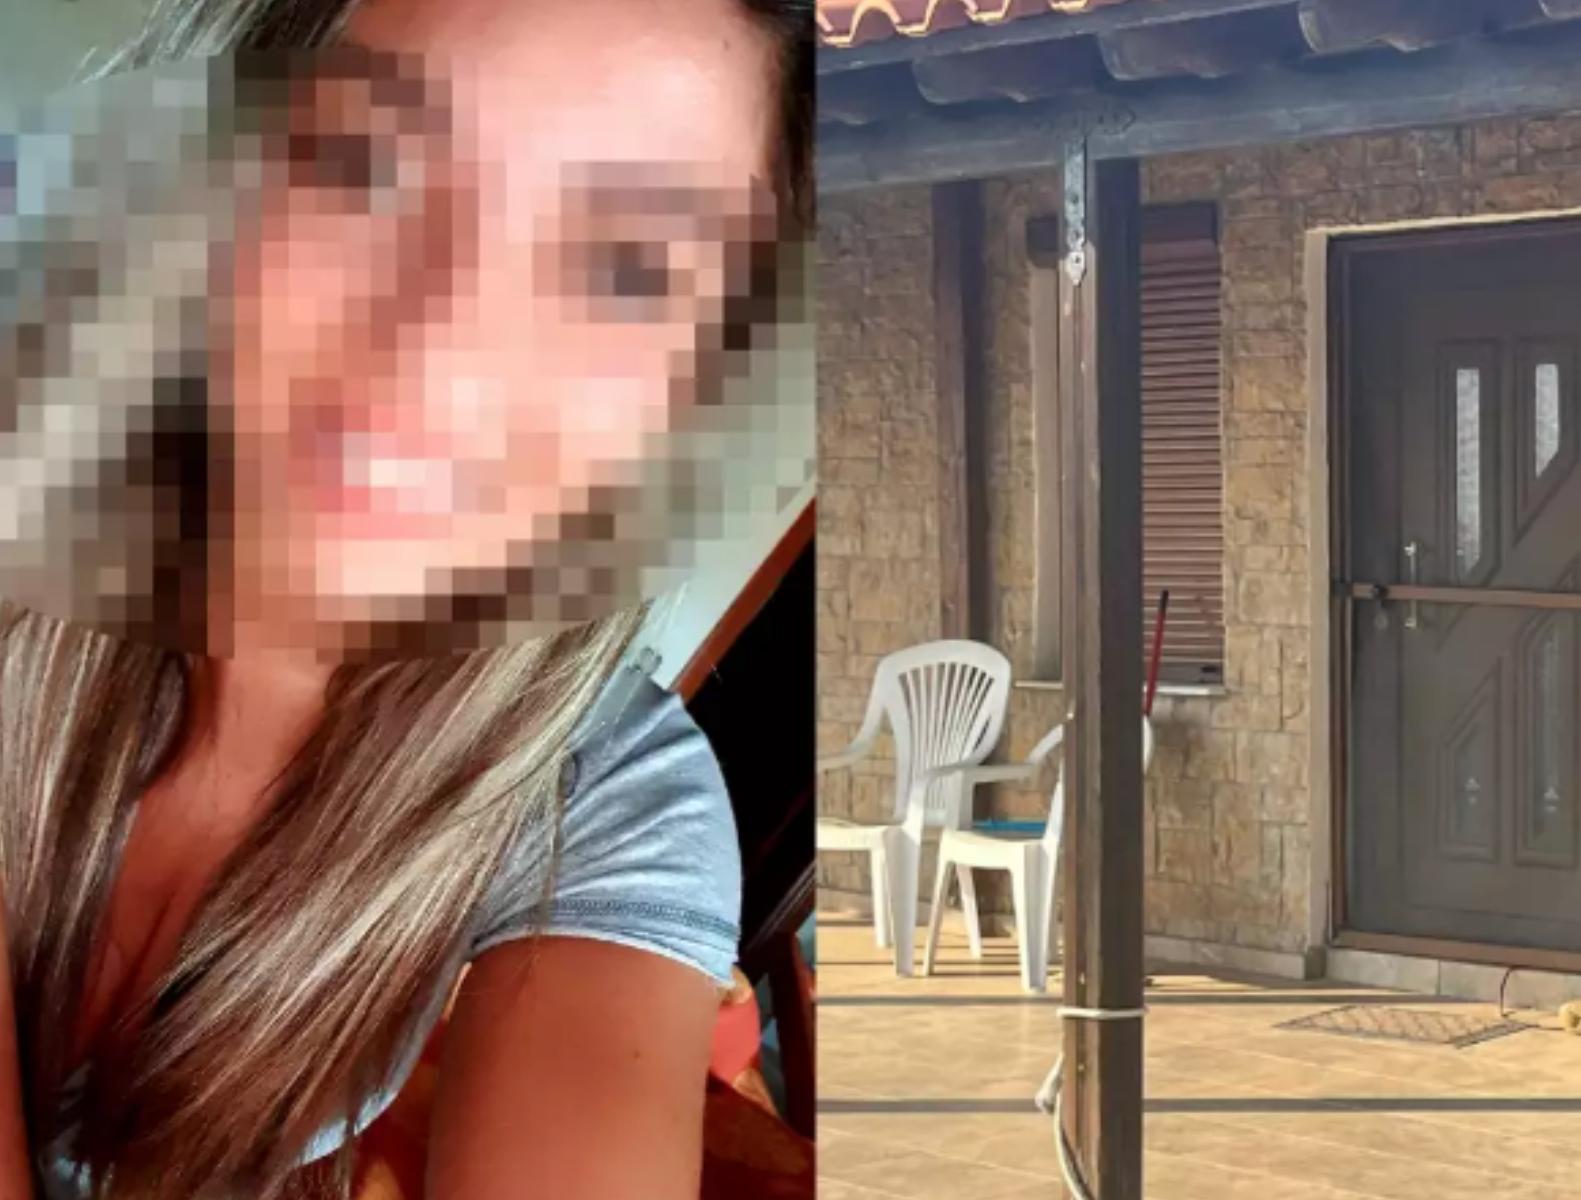 Χαλκιδικη  – Θριλερ  : Εξαφανίστηκε 26χρονη μητέρα με την 3χρονη κόρη της -Πήγε στη Γαλλία», ενημερώθηκε η Ιντερπόλ